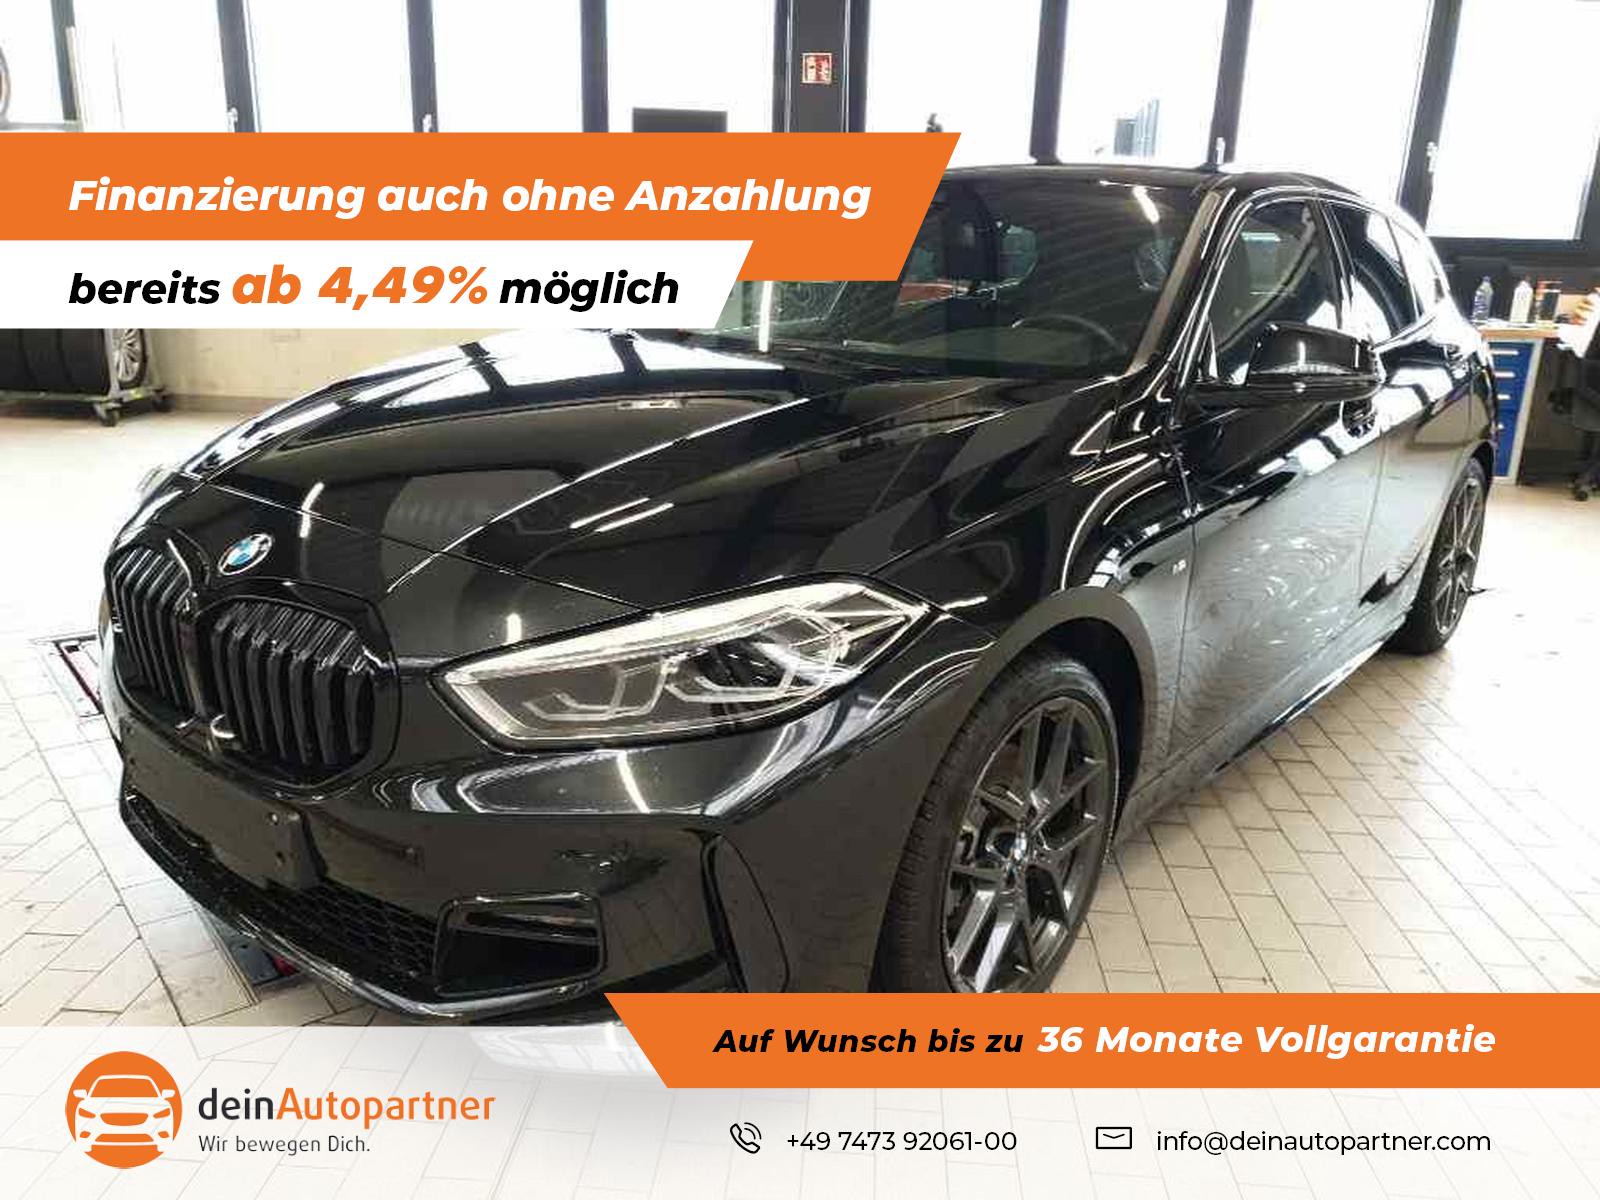 BMW 116 i M Sport gebraucht kaufen in Mössingen Preis 24950 eur